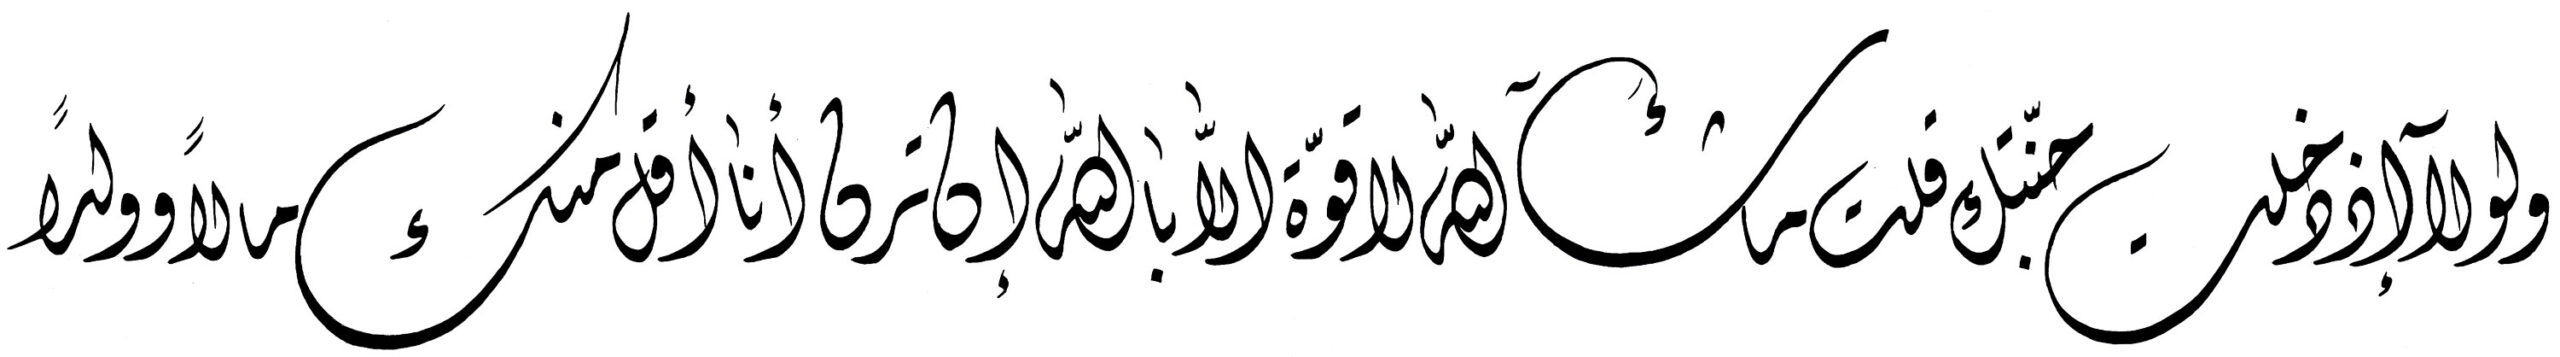 Al Kahf 18 39 Diwani